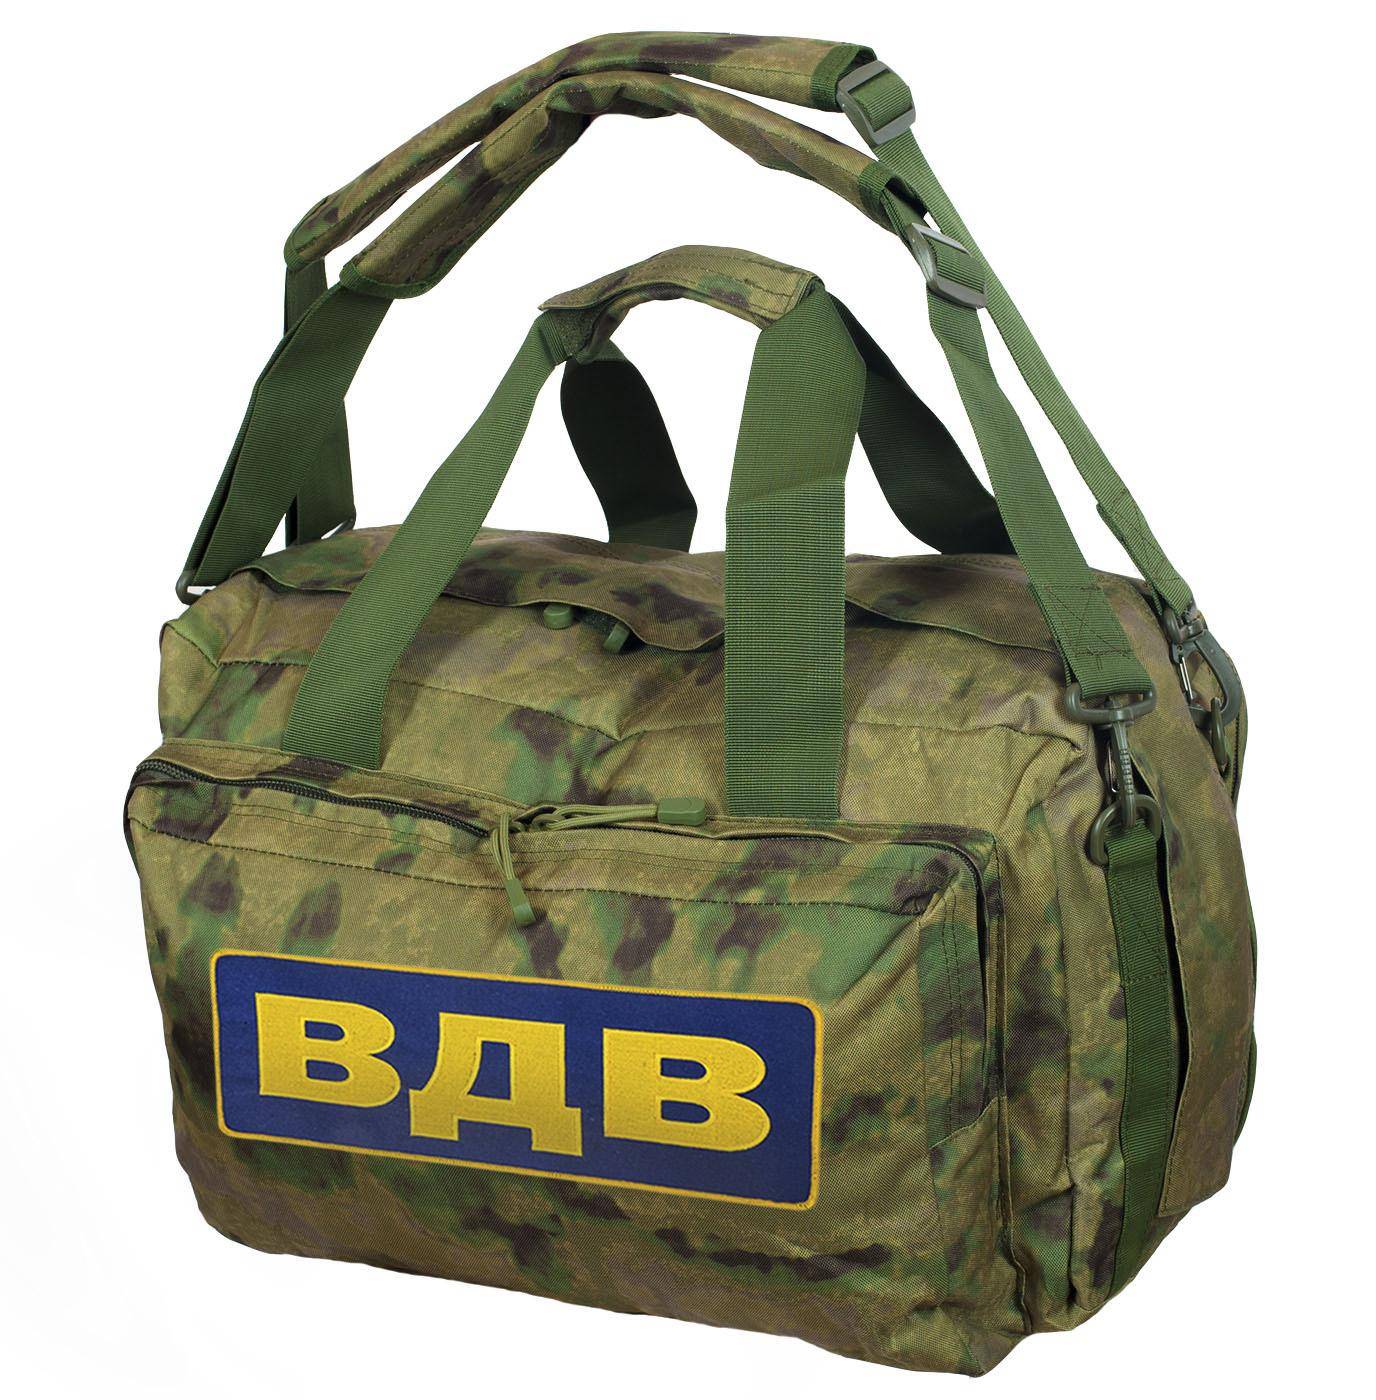 Тактический рюкзак или непременный атрибут армейского спецназа